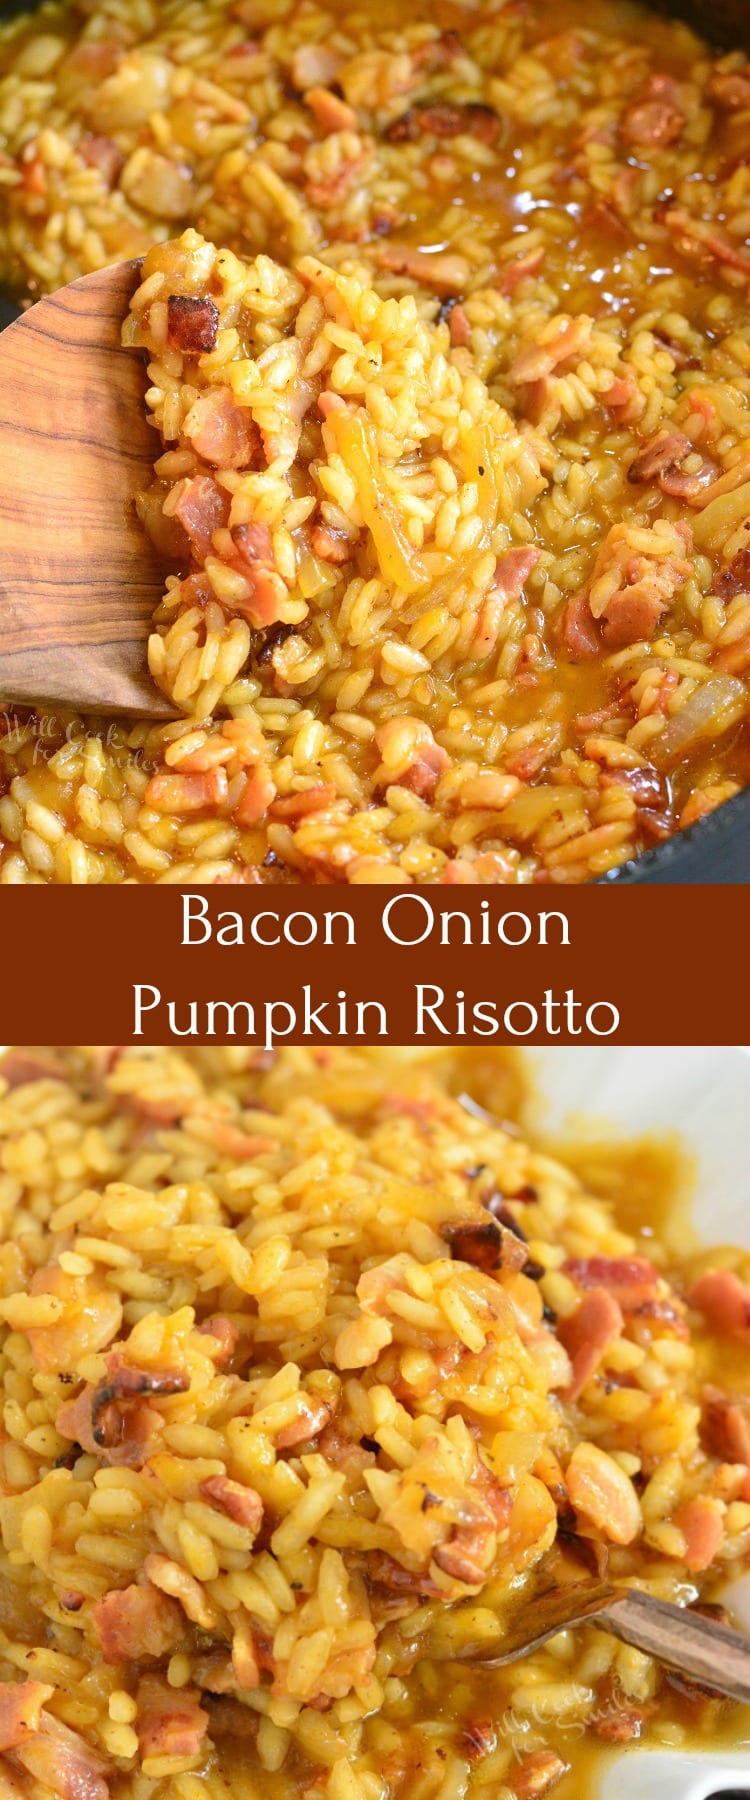 Bacon Onion and Pumpkin Risotto Recipe collage 